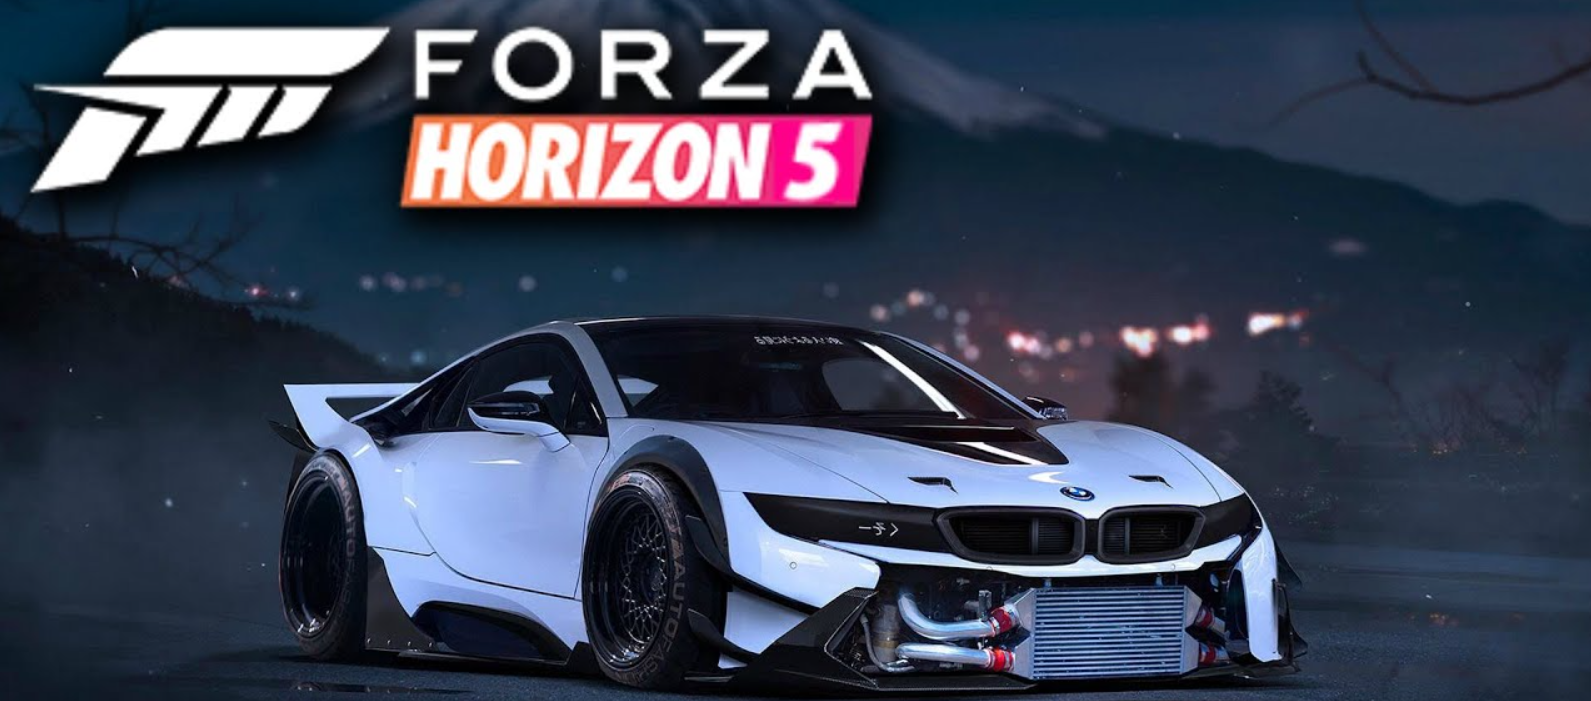 Forza horizon 5 год. Forza Horizon 5 Постер. Forza Horizon 5 обложка. Forza Horizon 5 Xbox. Forza Horizon 5 Premium.